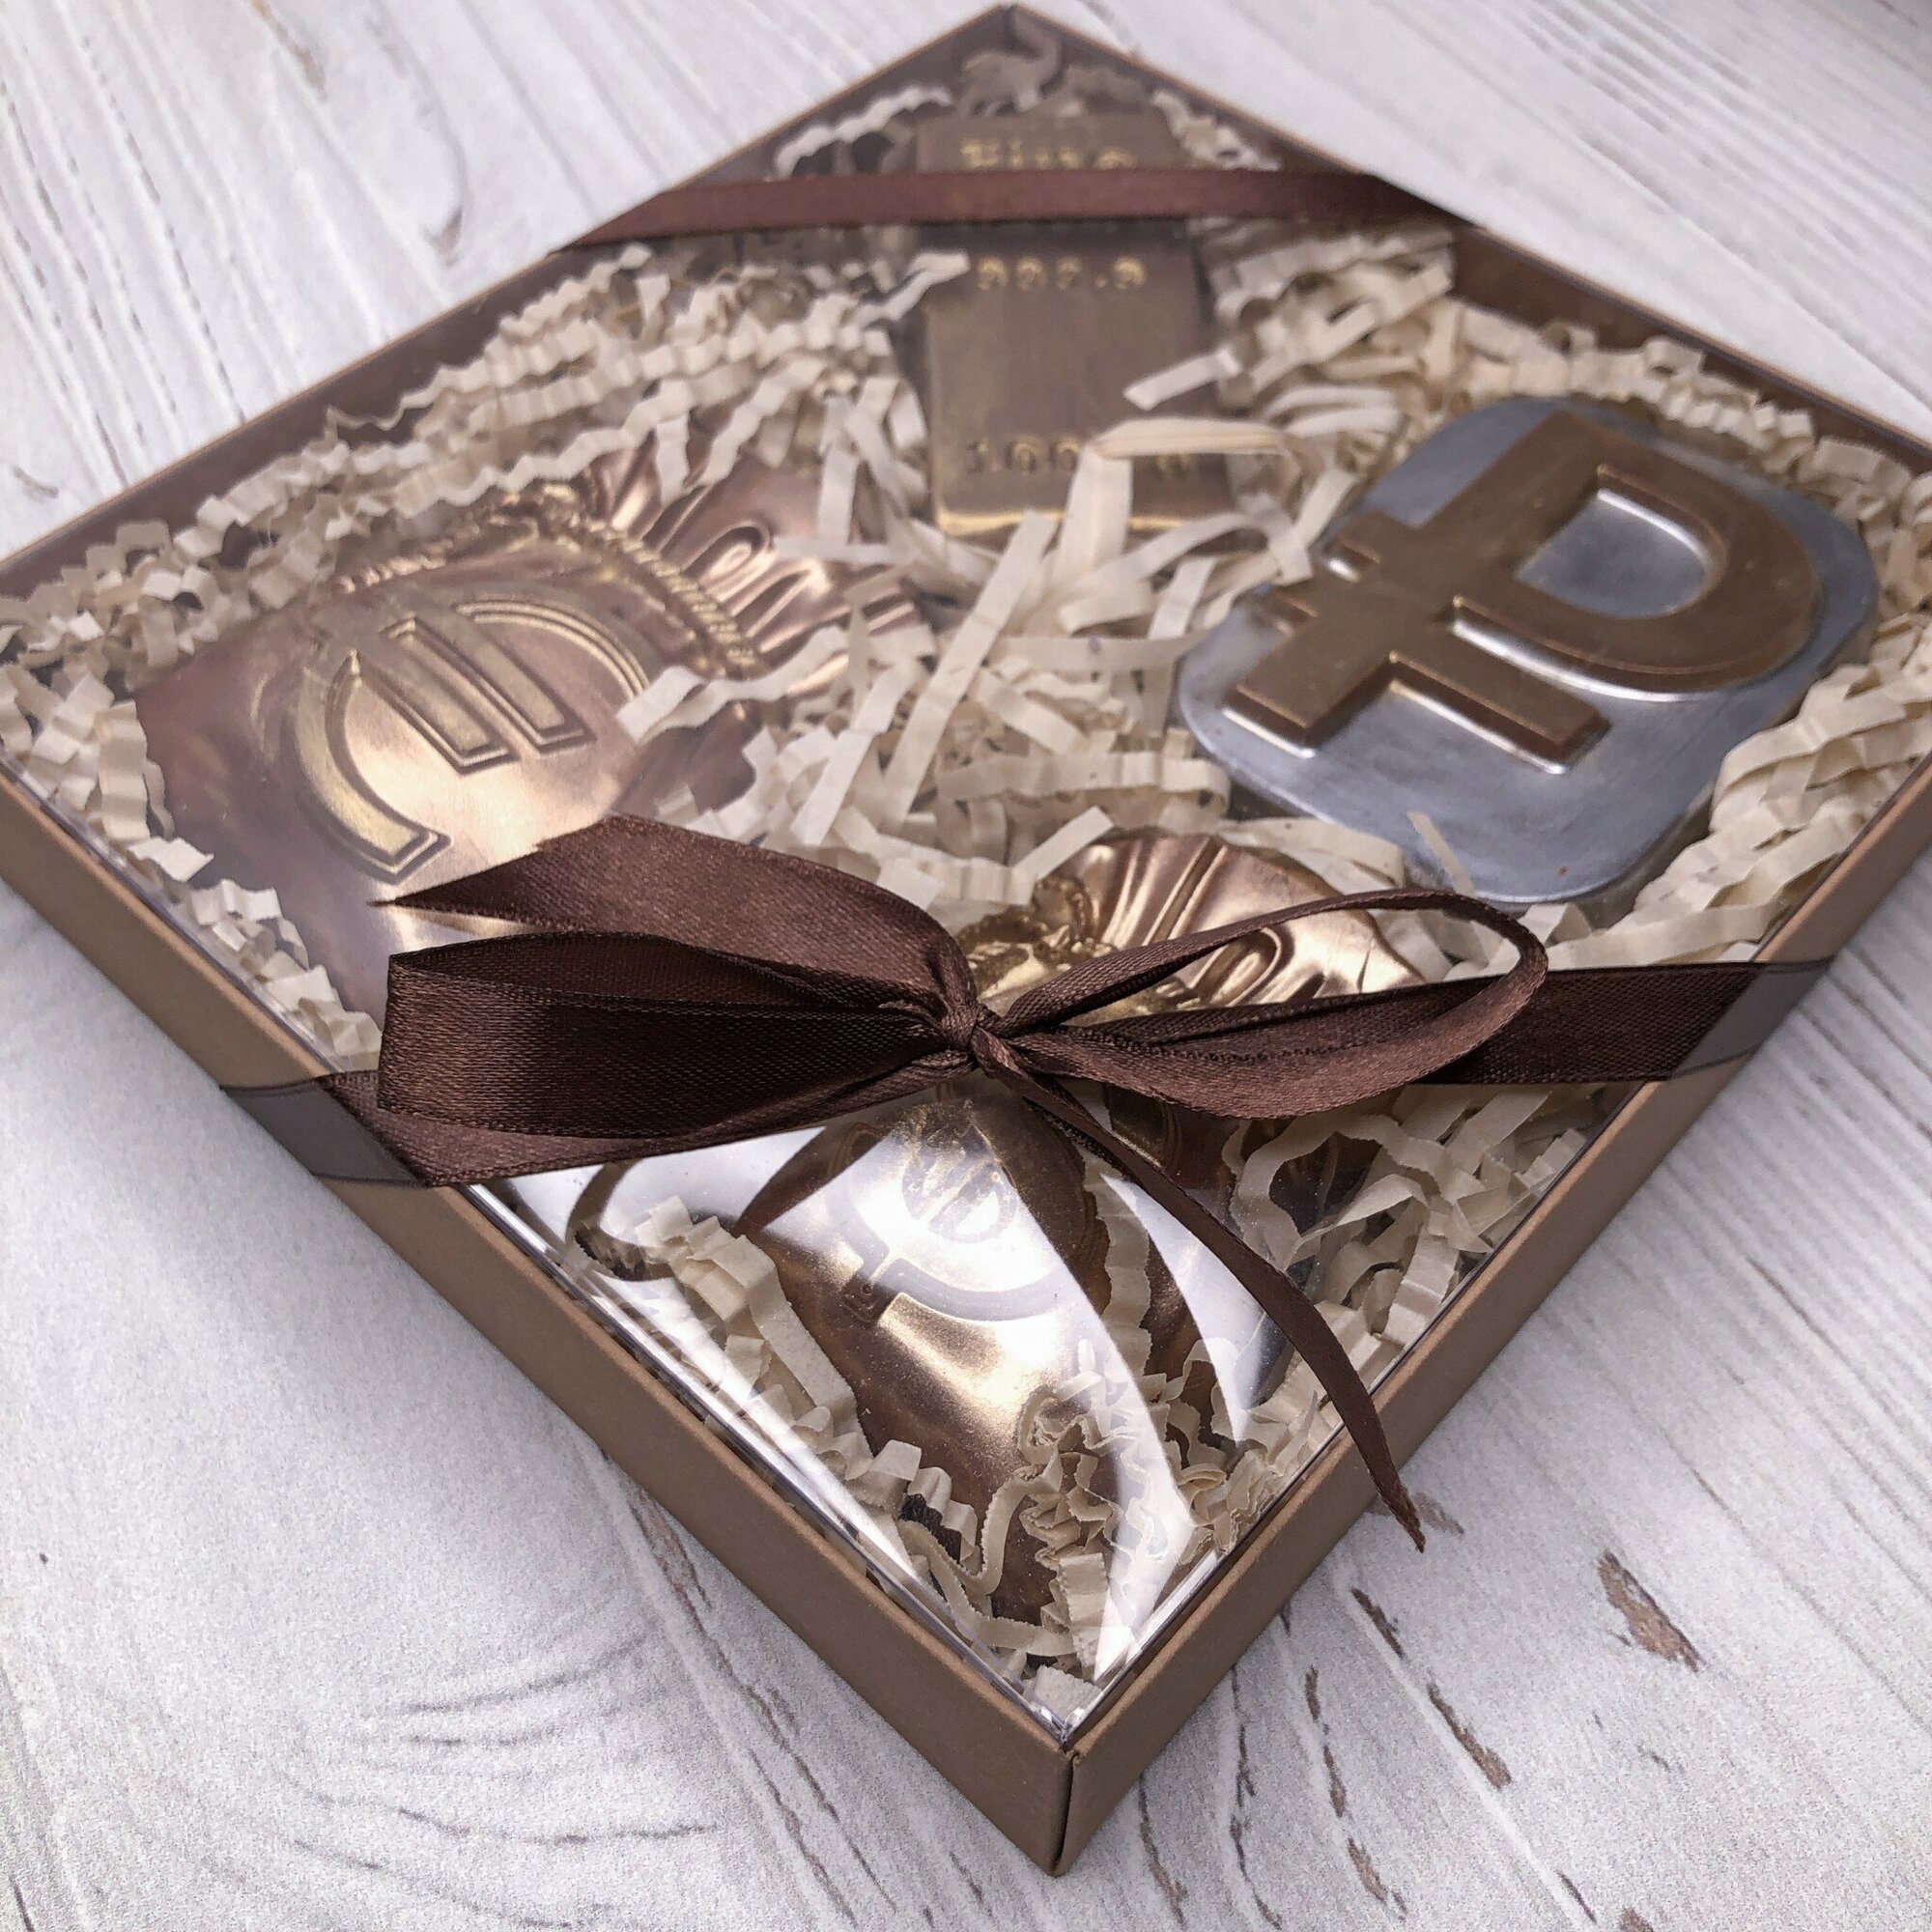 Шоколадная фигурка из бельгийского шоколада "Шоколадный набор "Денежный"" - фотография № 6